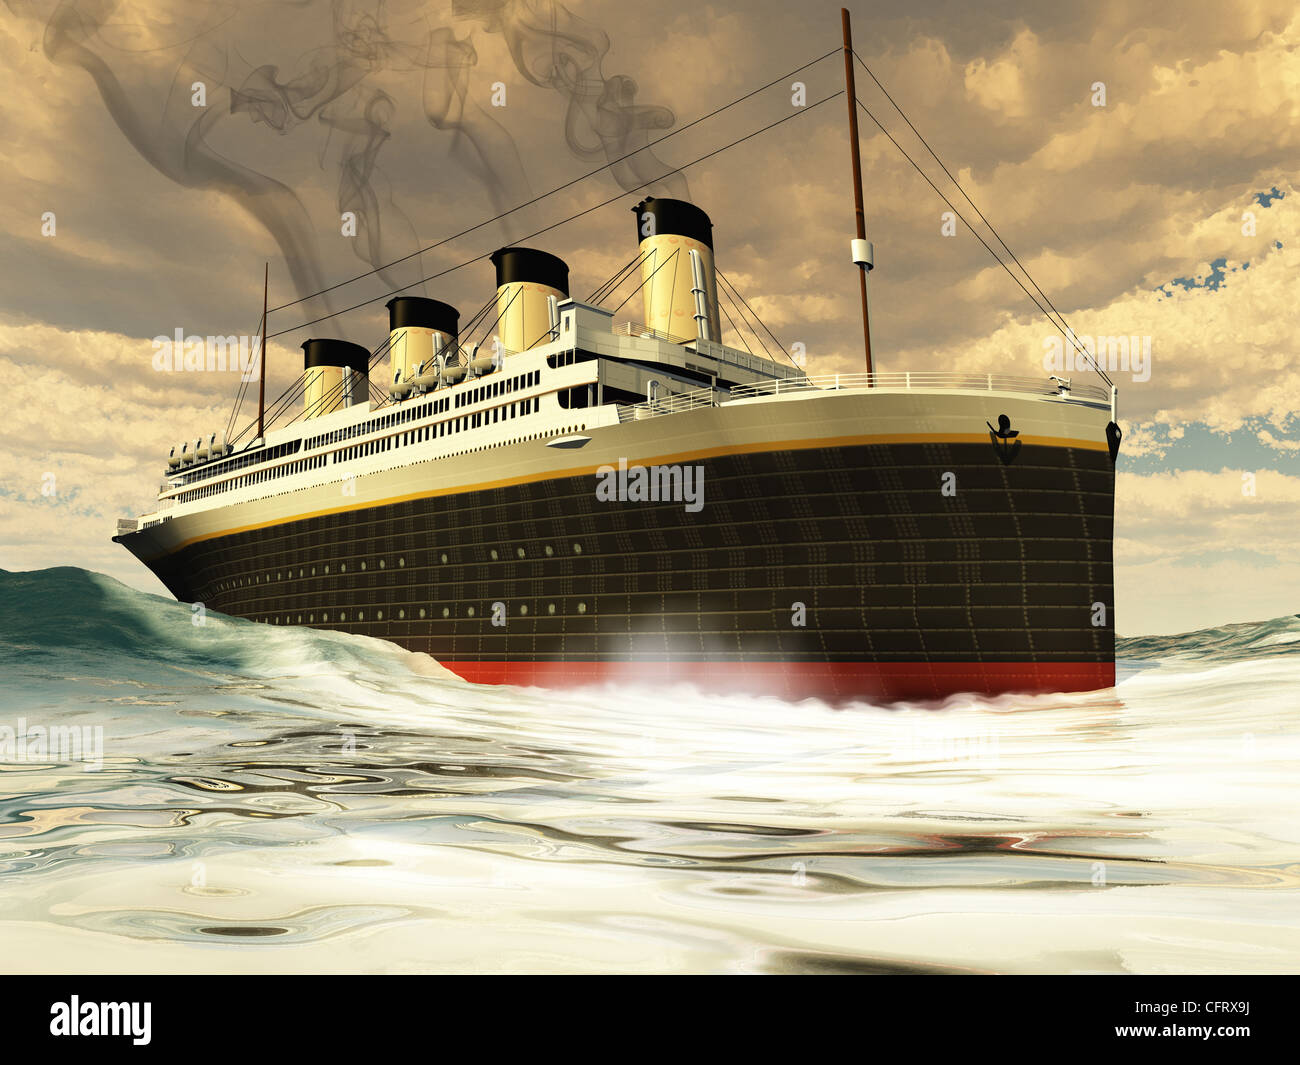 Le grand navire insubmersible de l'histoire avant son tragique naufrage sur son voyage inaugural. Banque D'Images